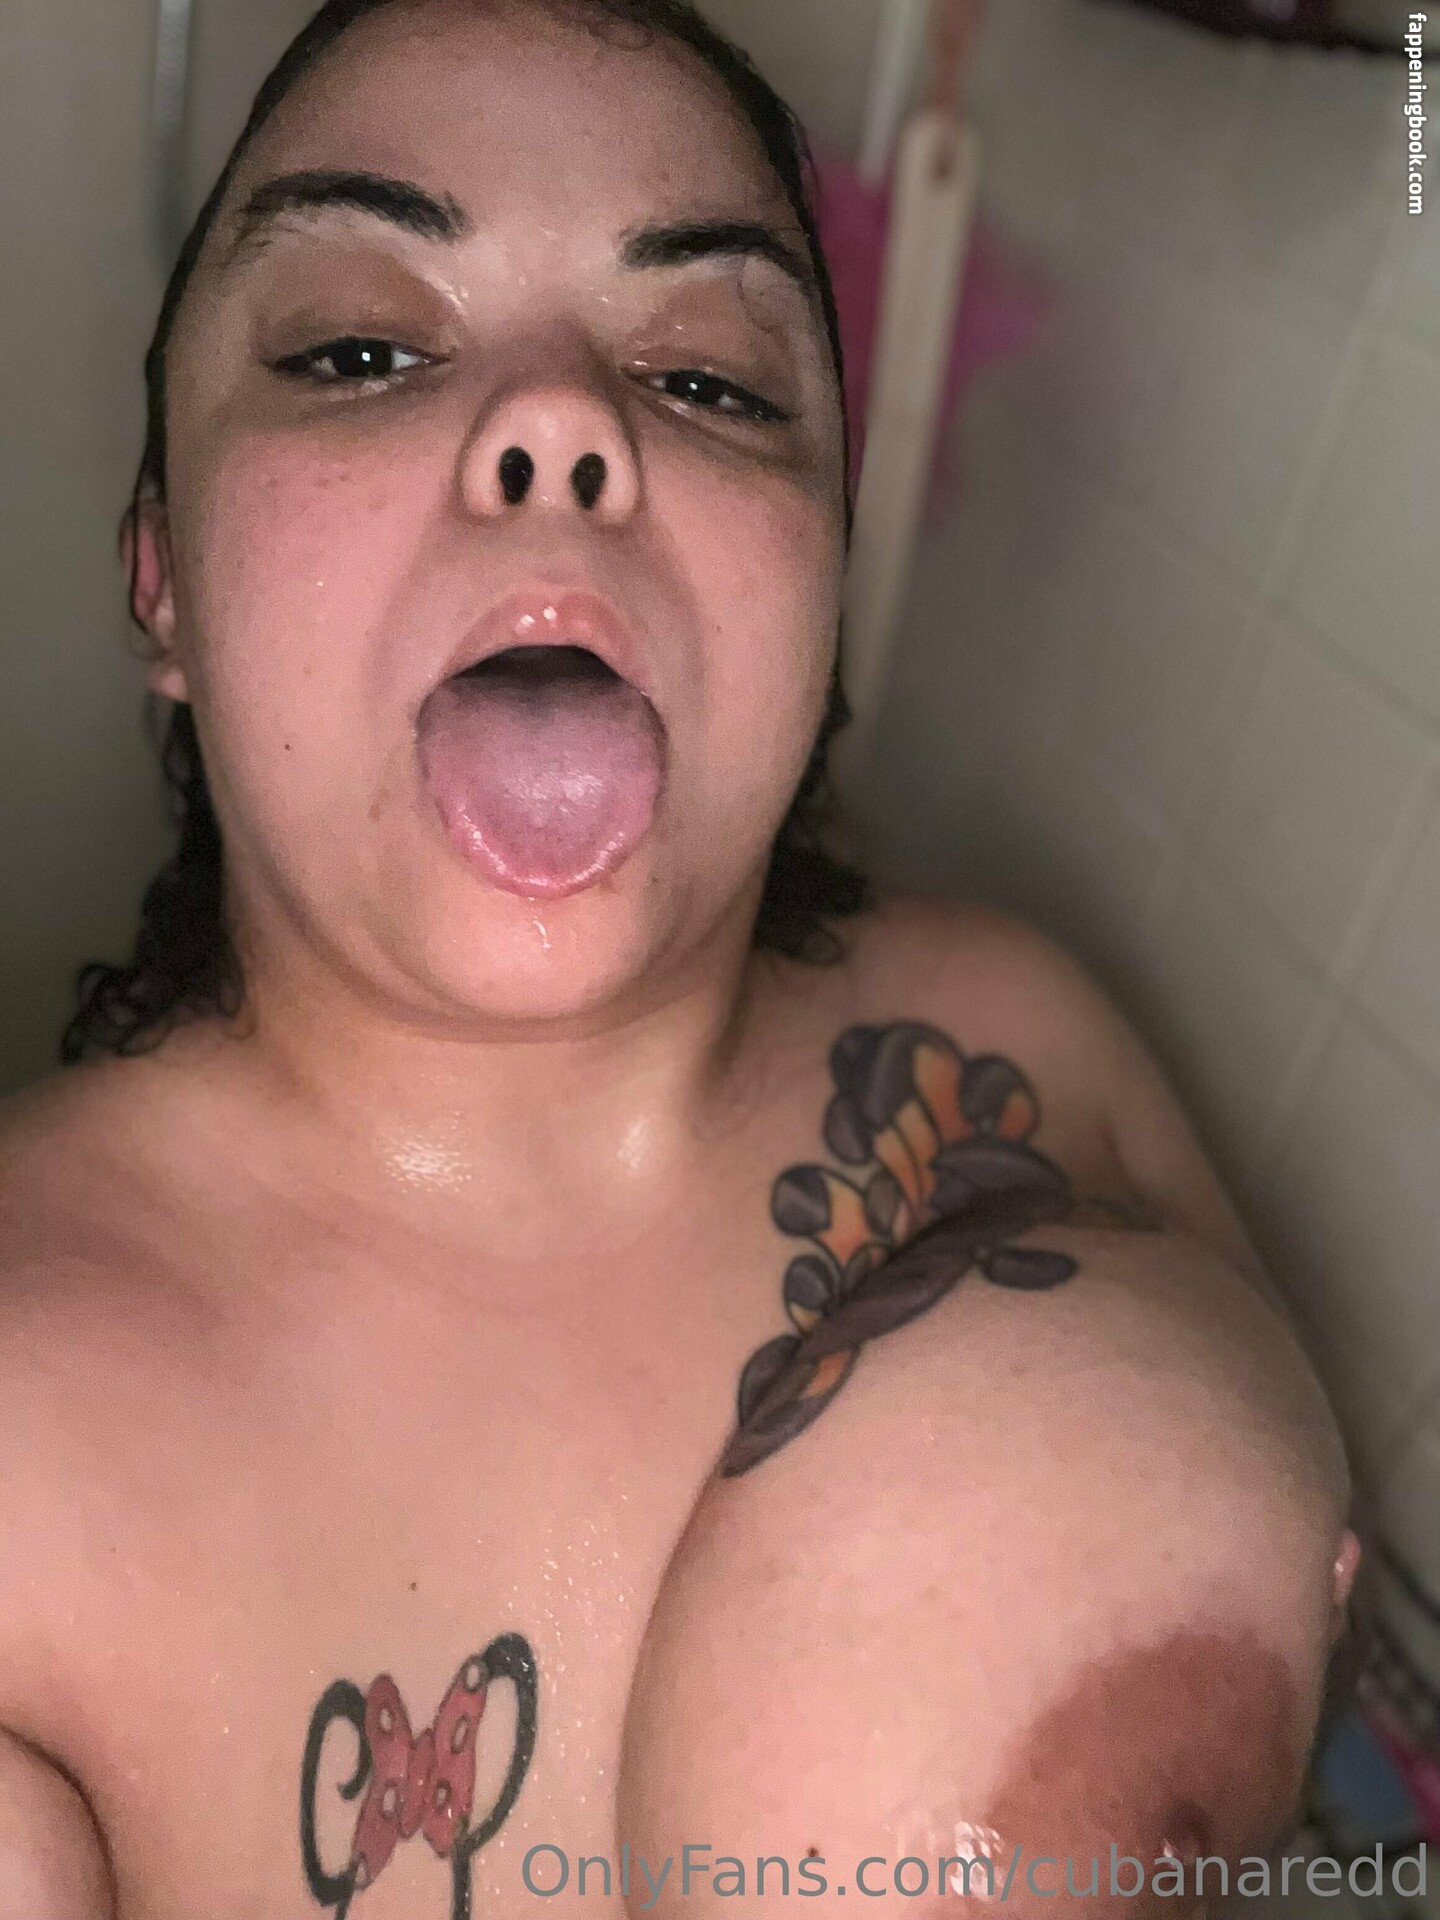 cubanaredd Nude OnlyFans Leaks